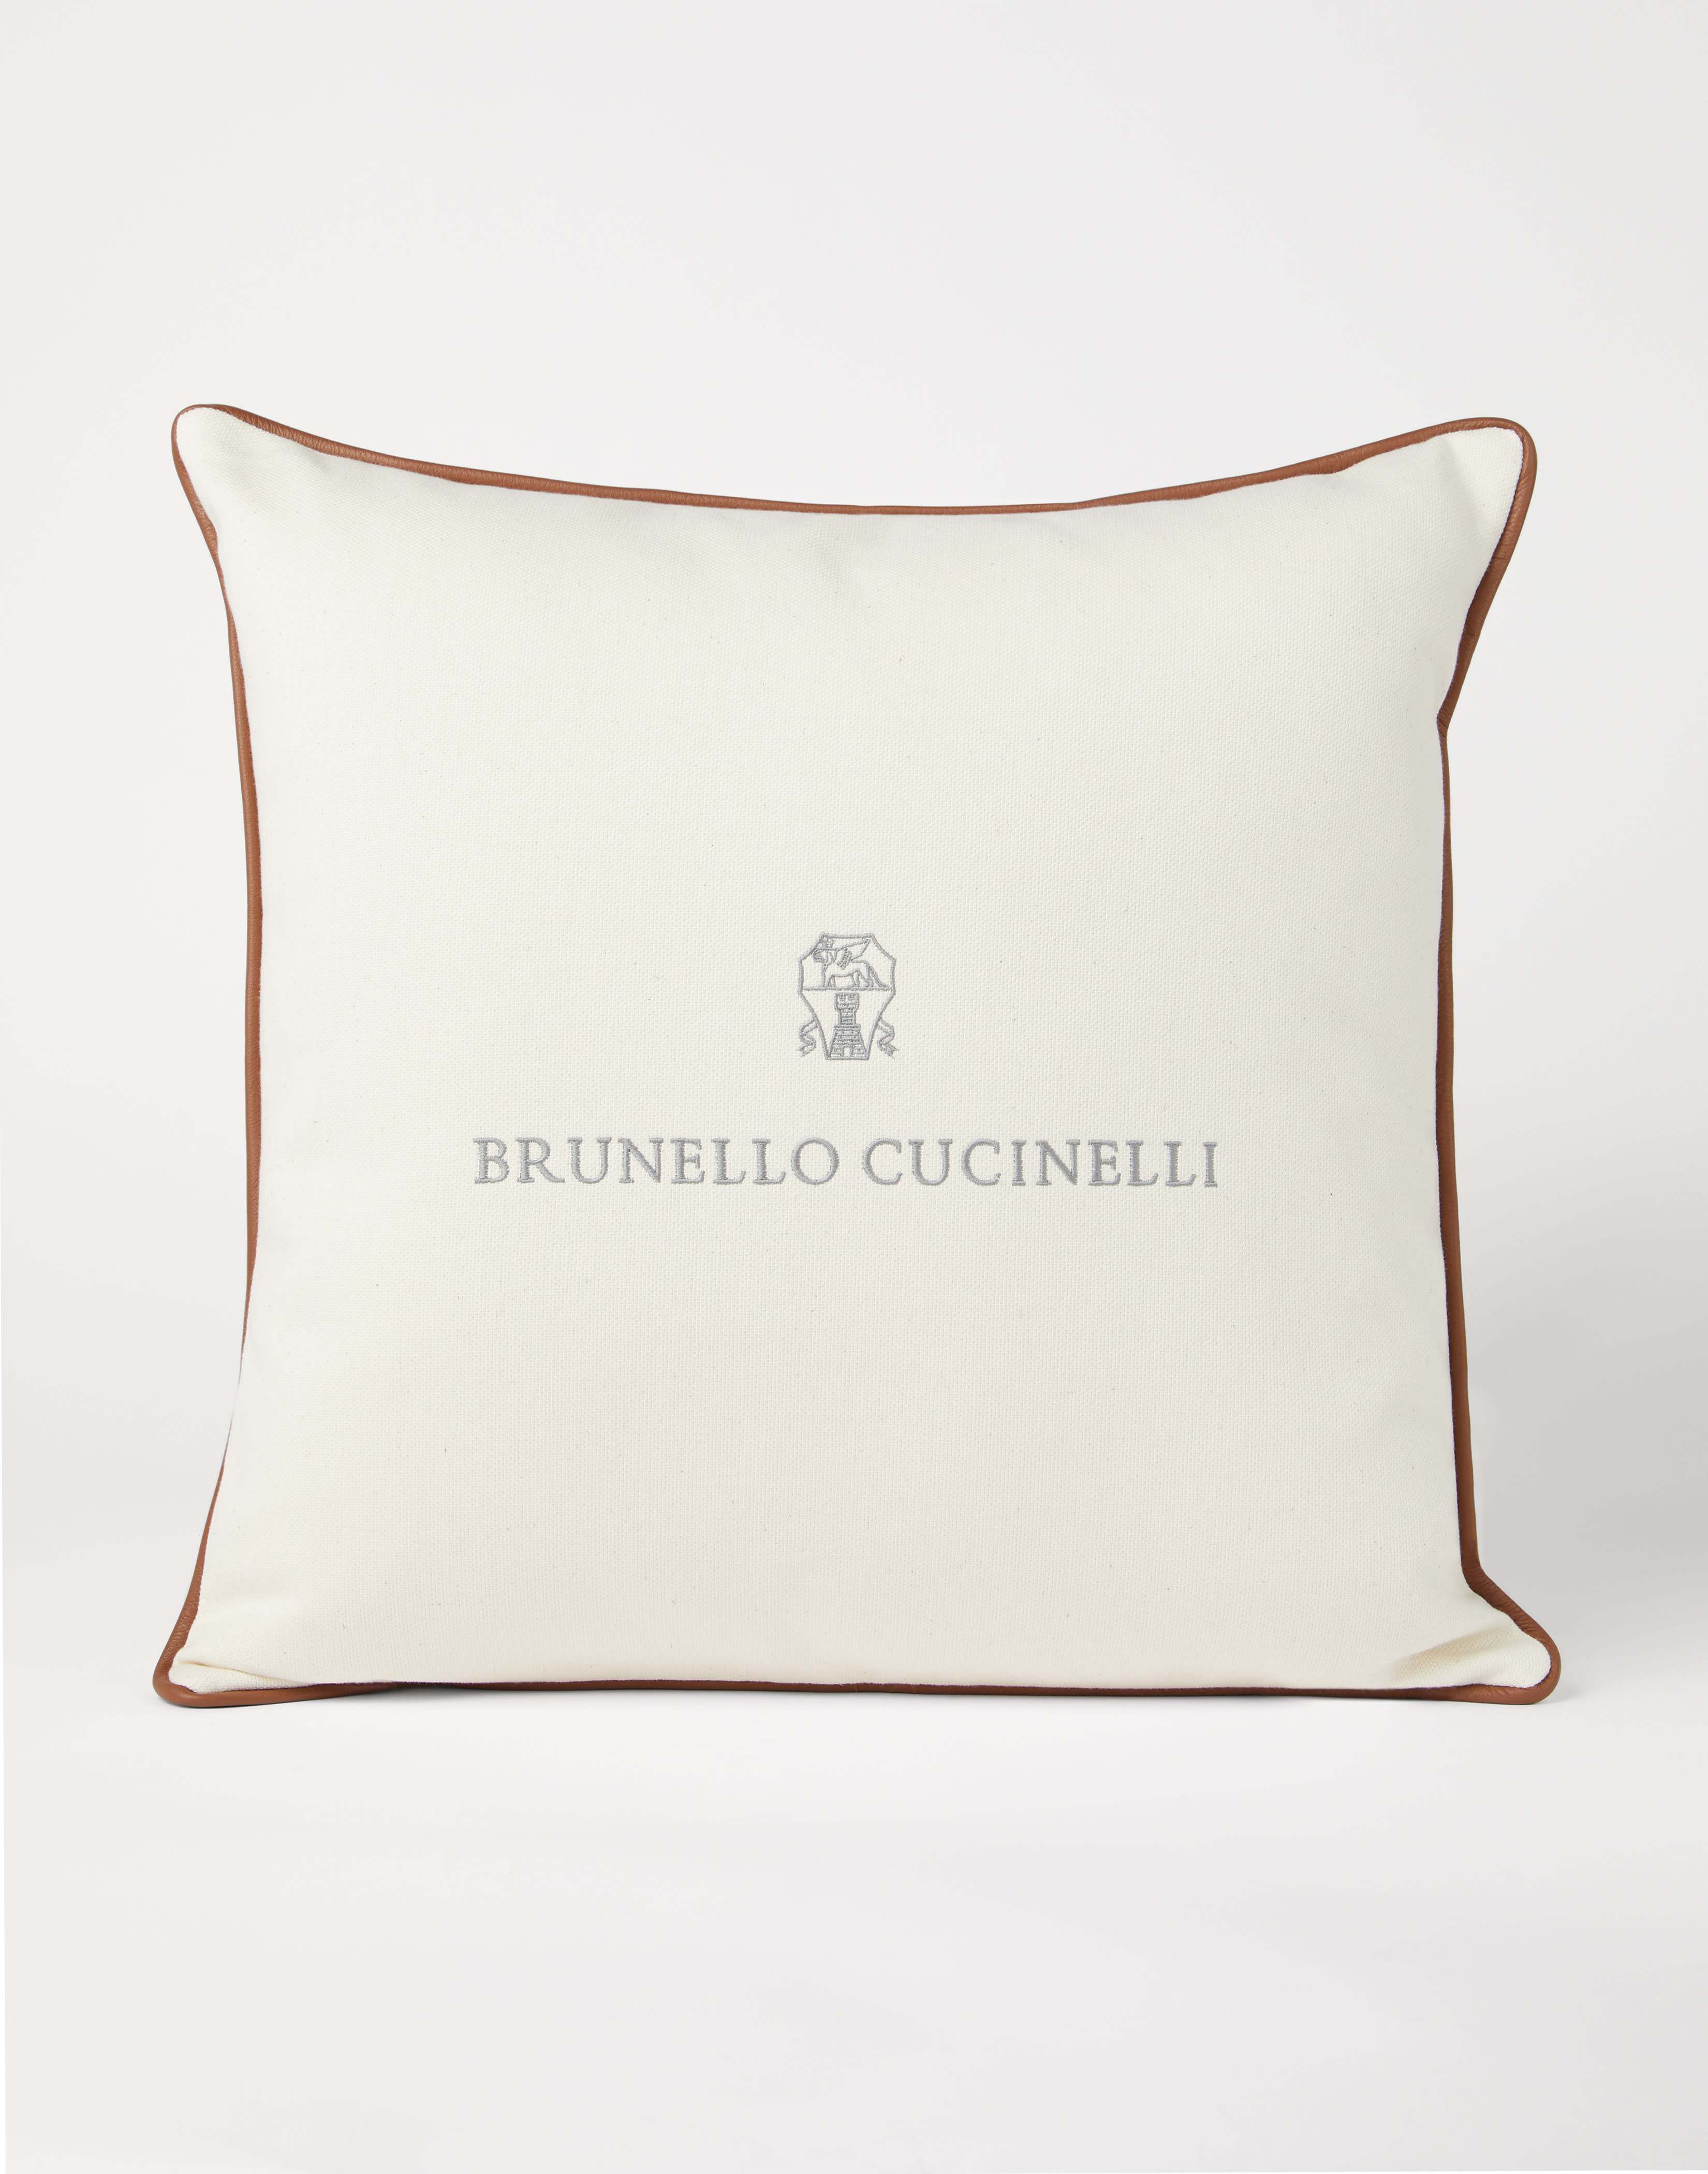 帆布大靠垫 白色 生活风格 - Brunello Cucinelli